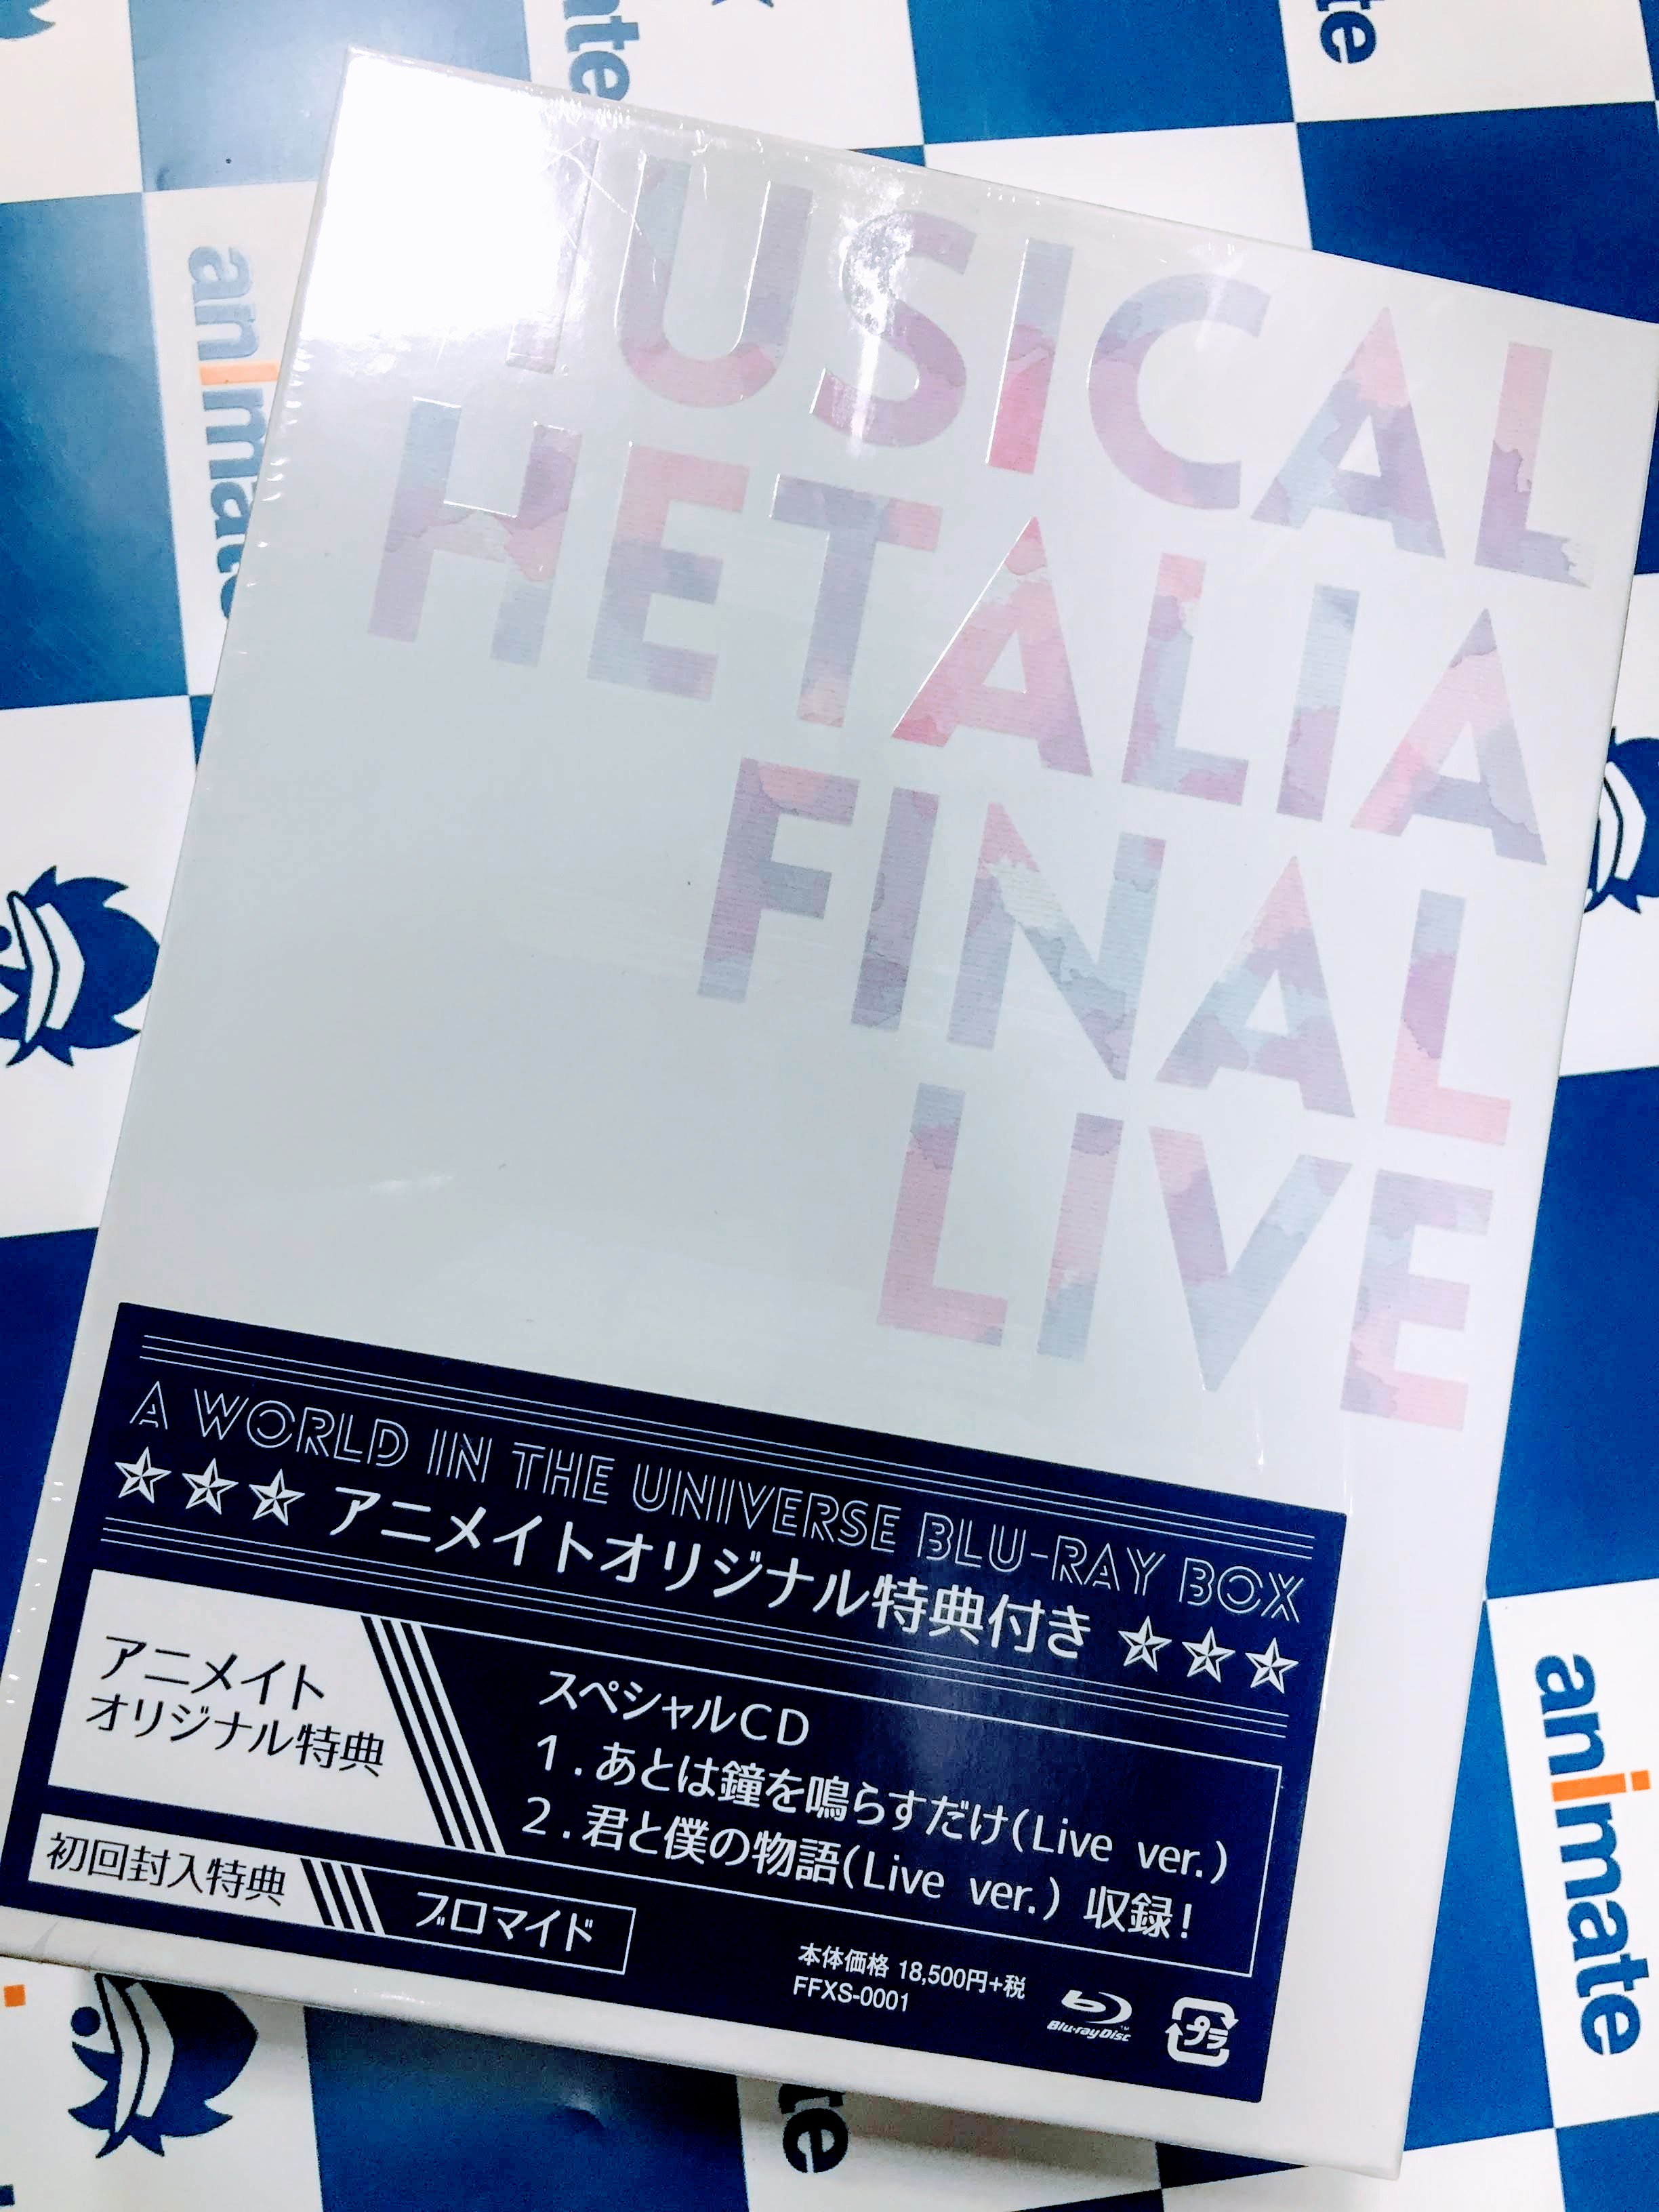 ヘタミュ FINAL LIVE Blu-Ray アニメイト特典CD付き